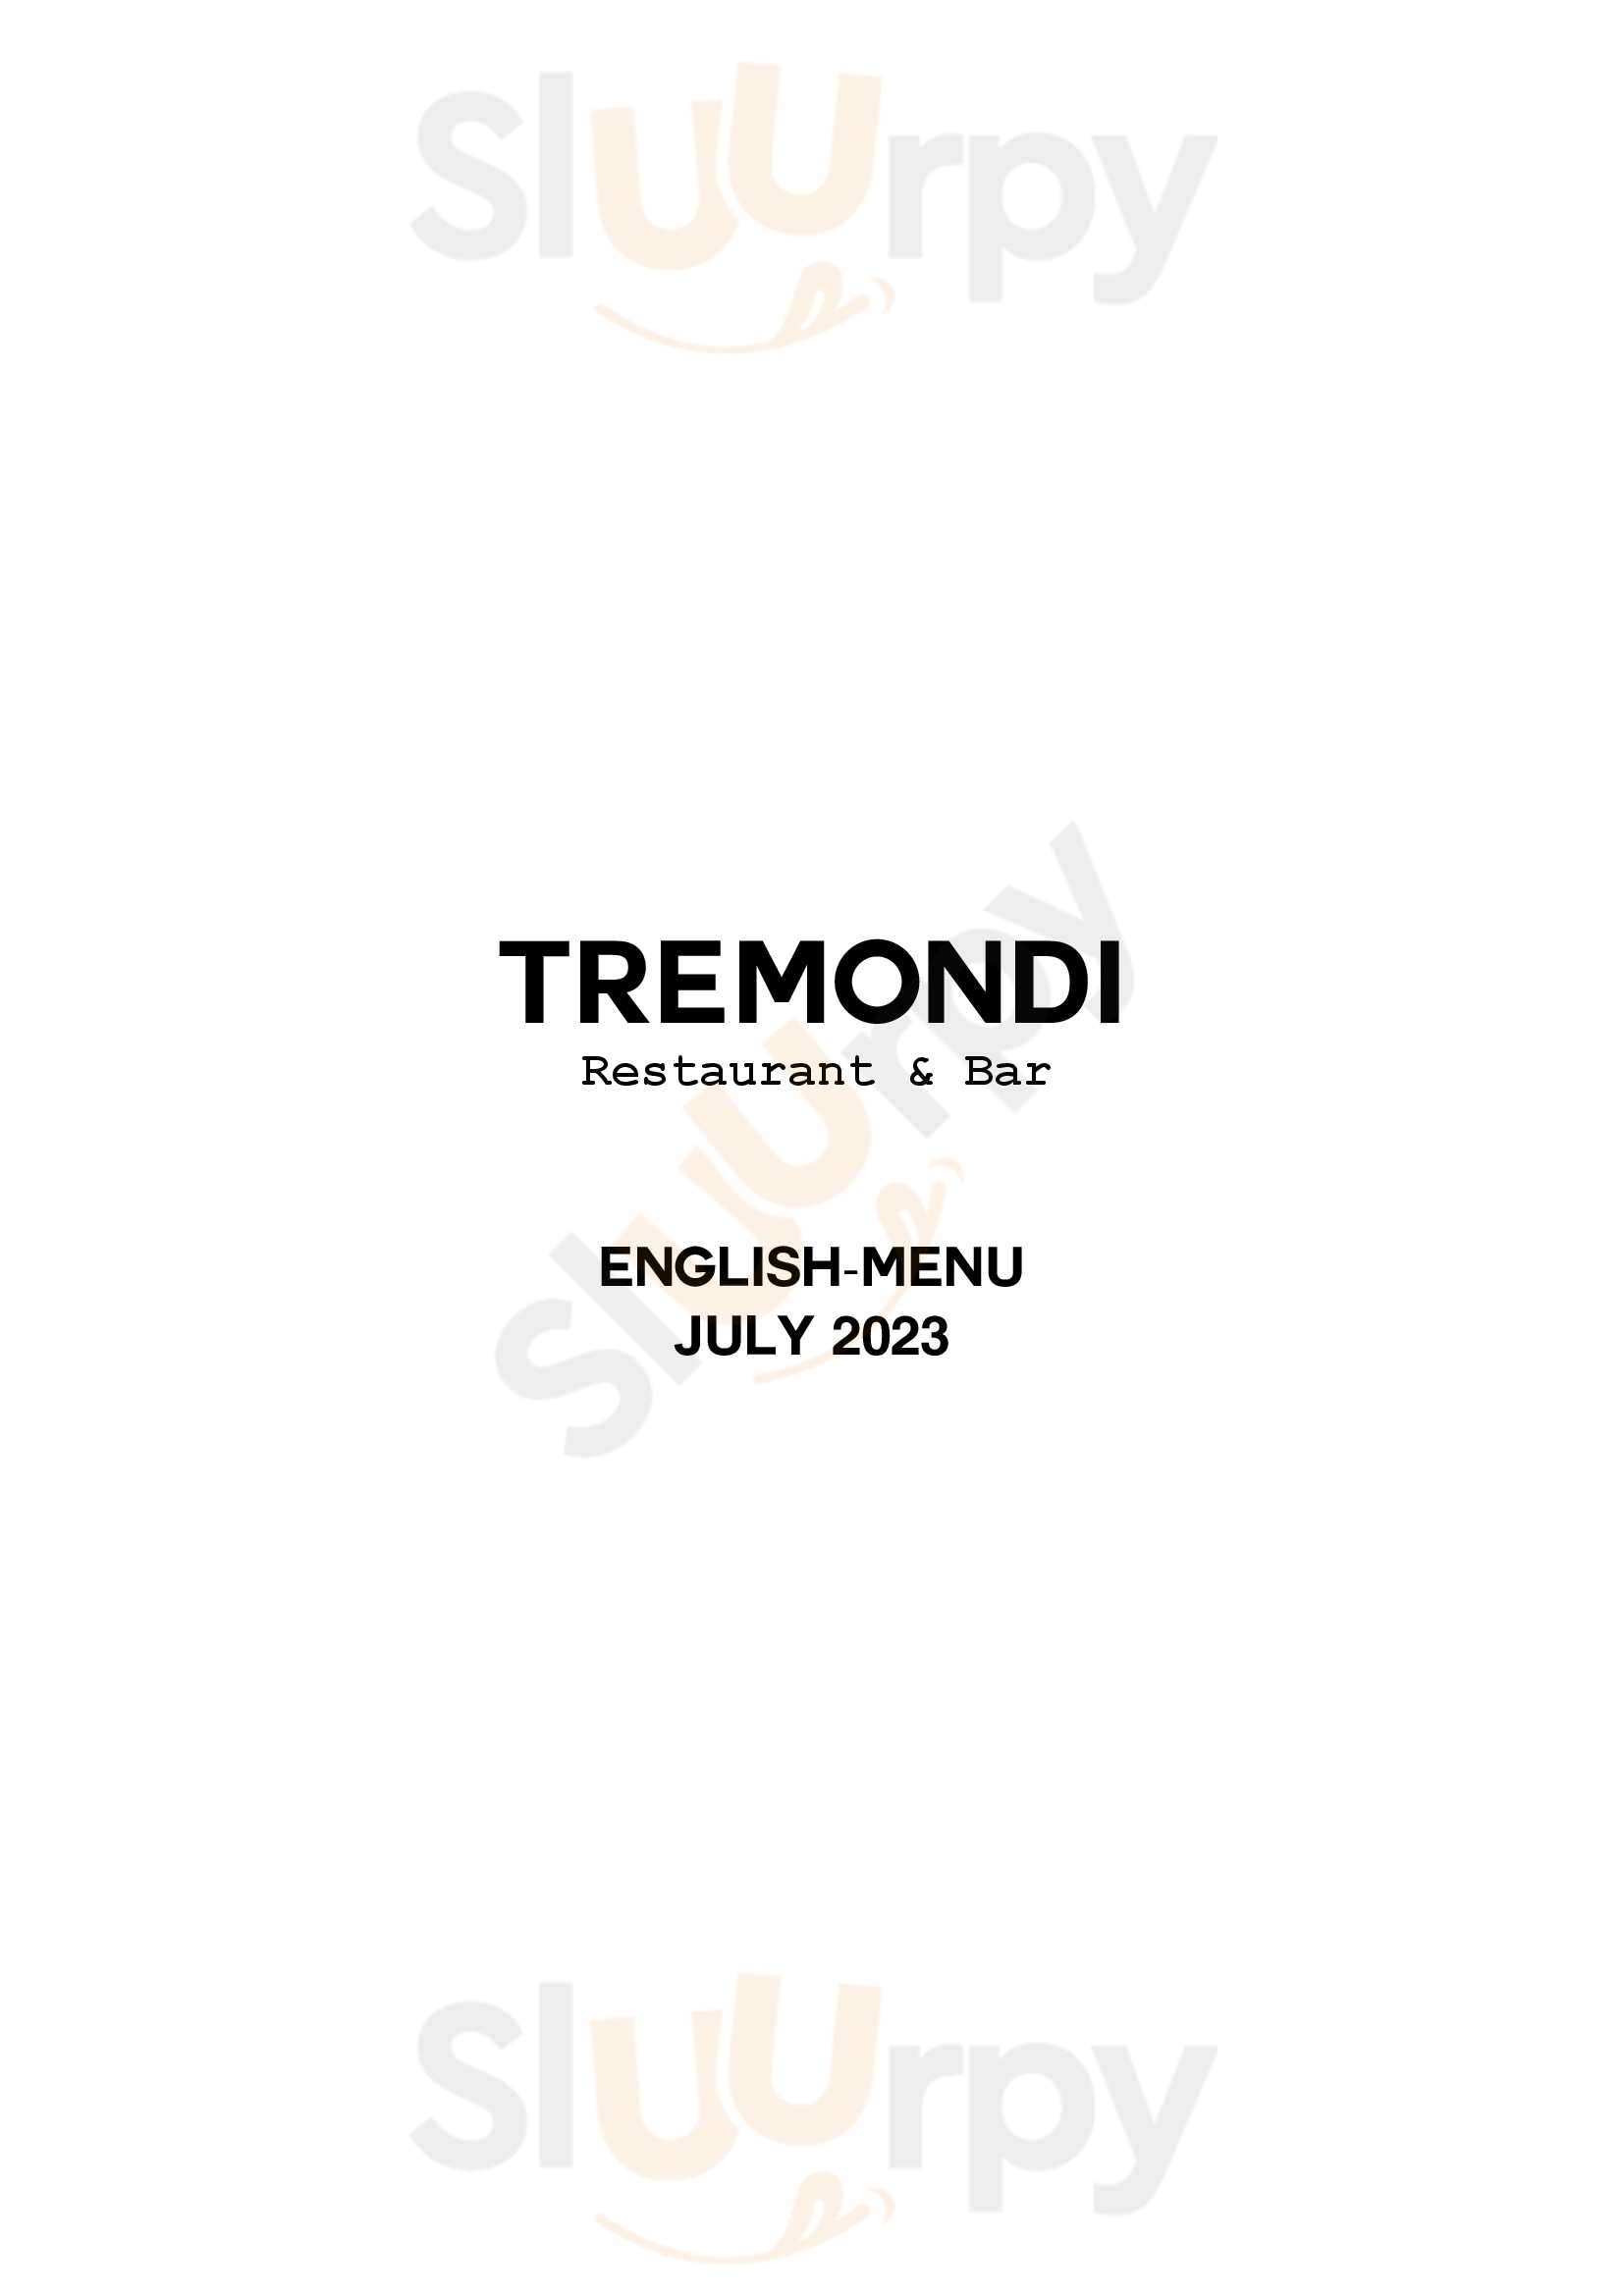 Tremondi Restaurant & Bar Zürich Menu - 1